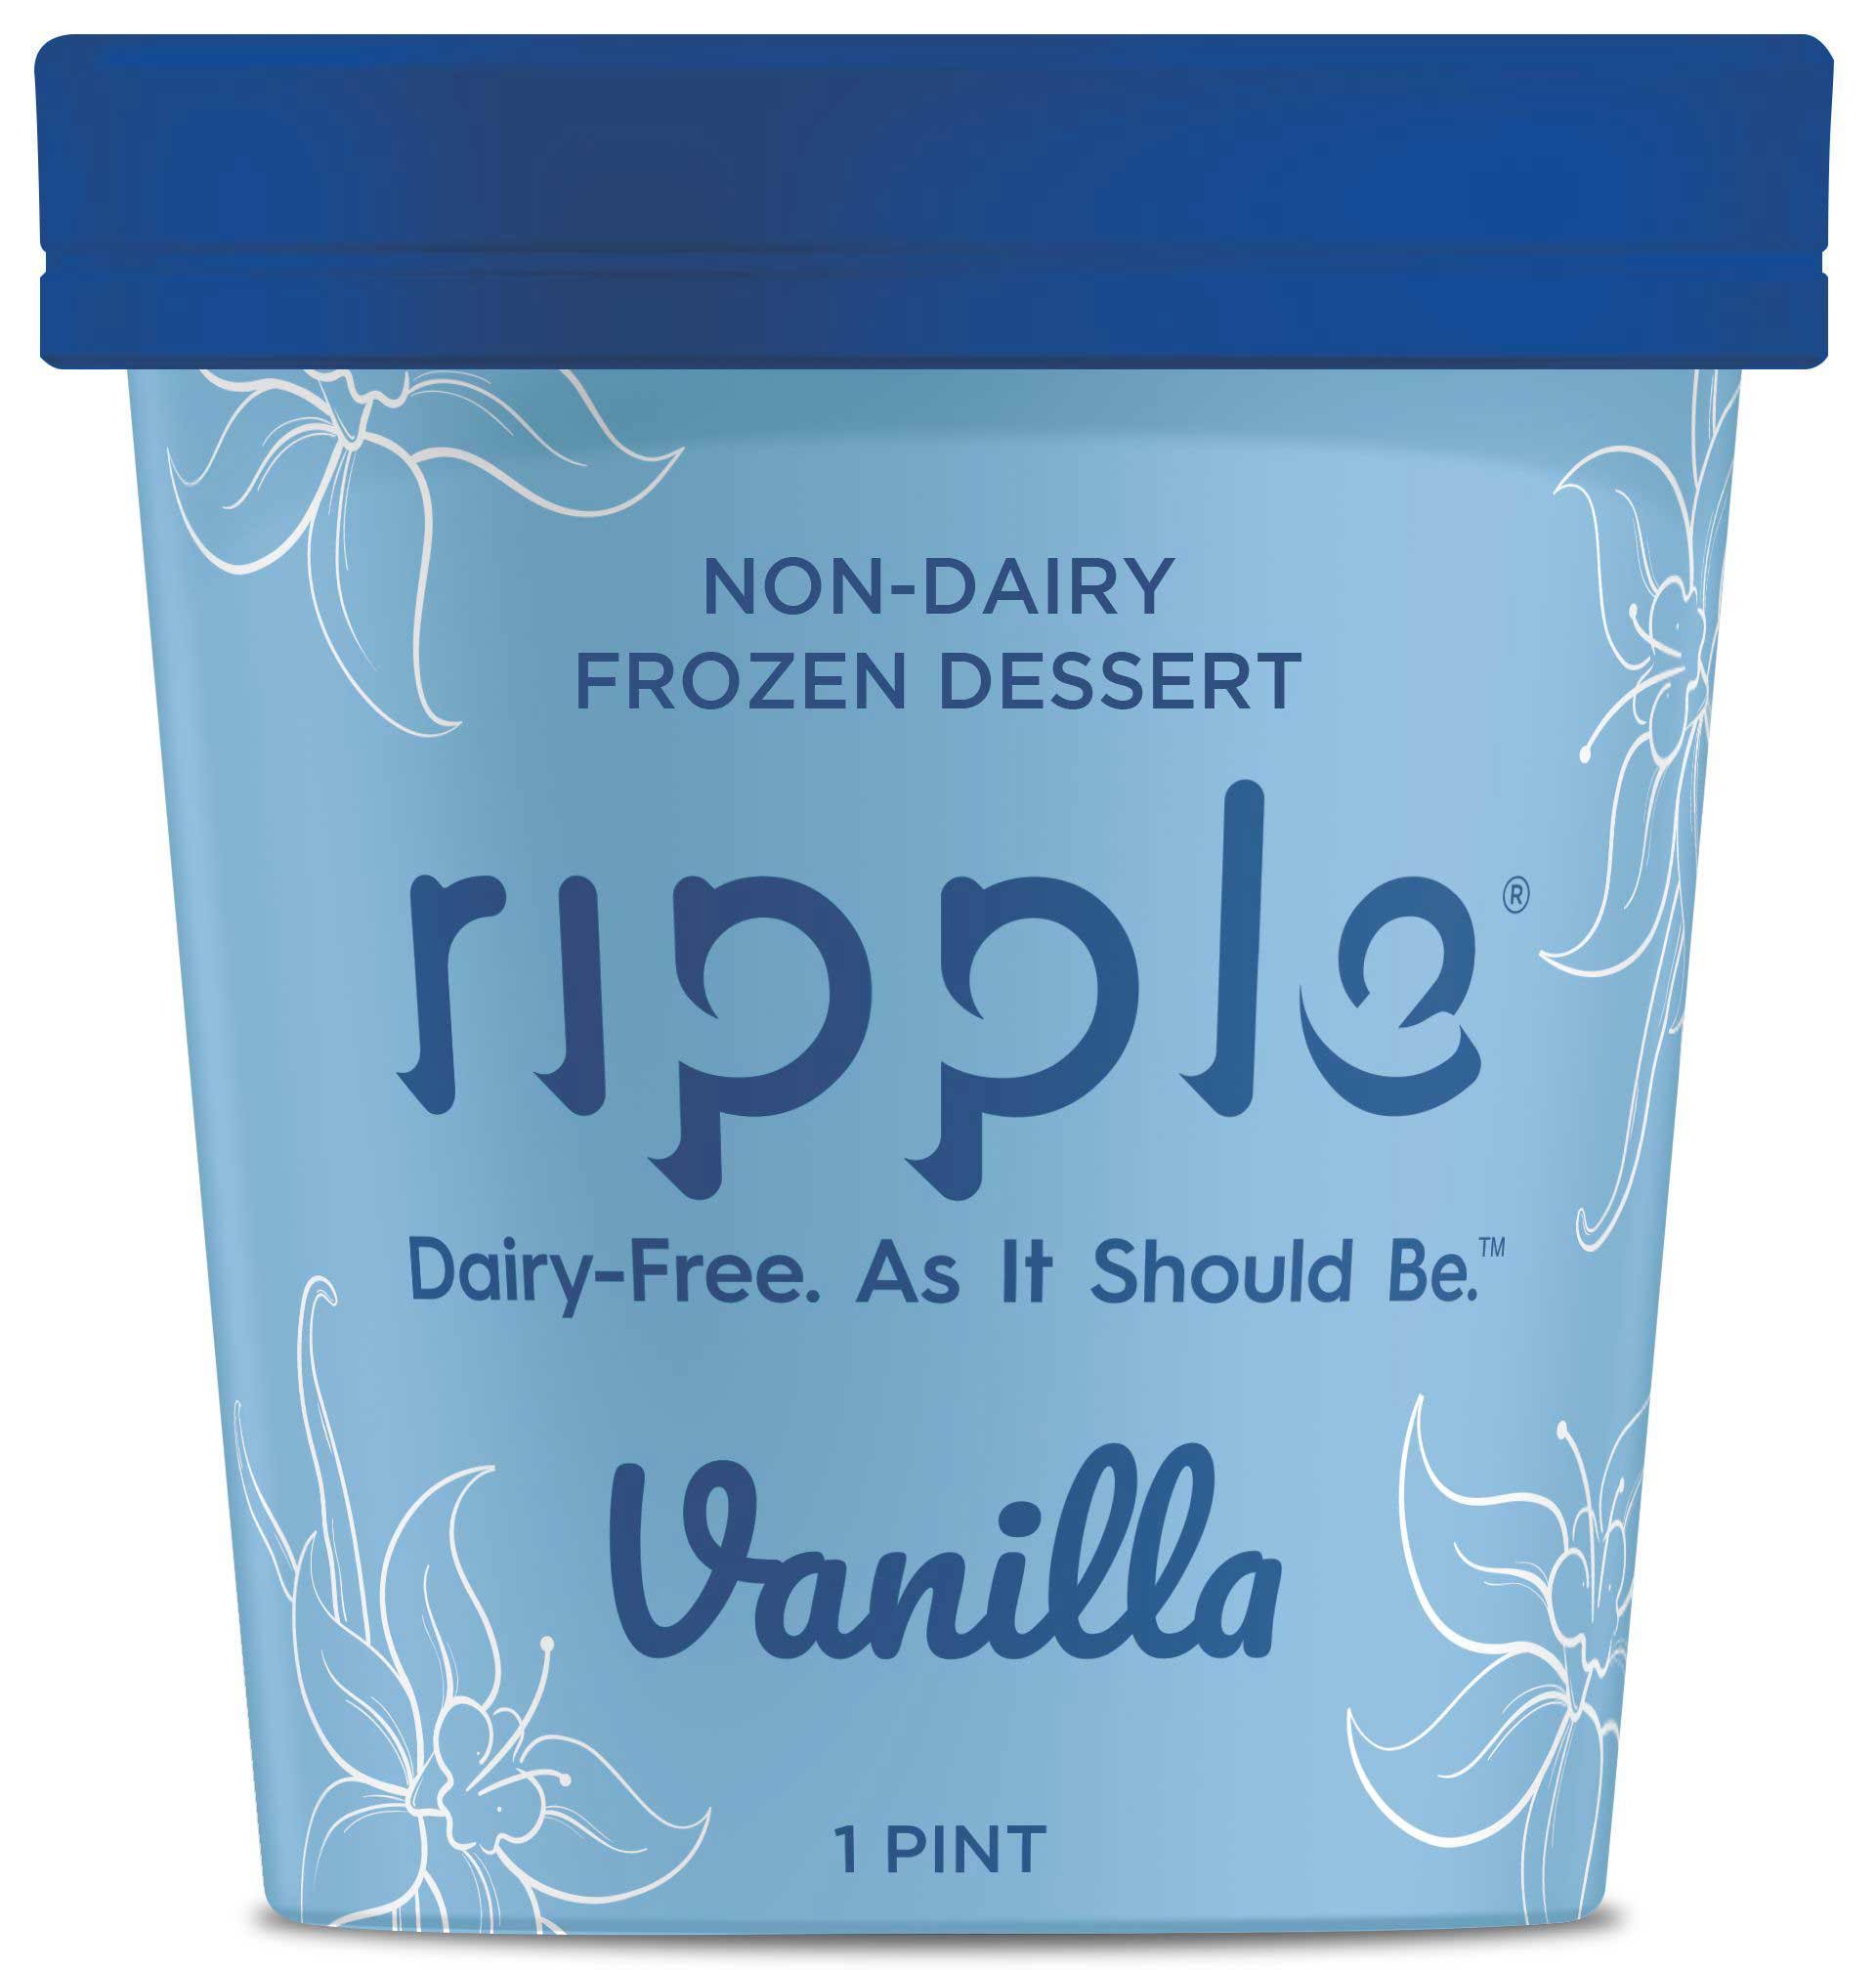 Ripple Frozen Dessert, Non-Dairy, Vanilla - 1 pint